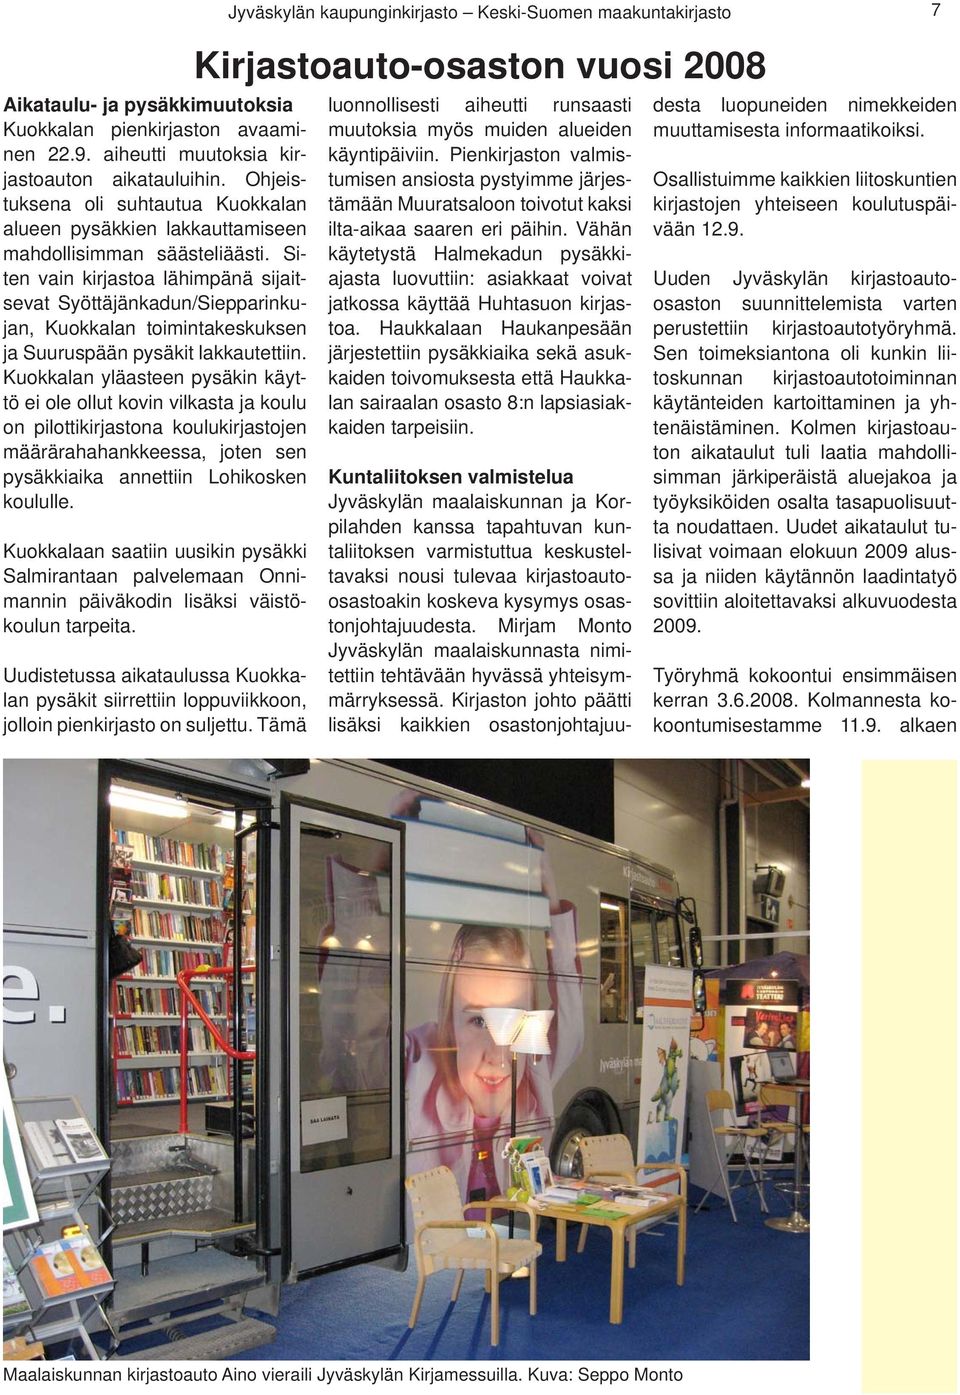 Siten vain kirjastoa lähimpänä sijaitsevat Syöttäjänkadun/Siepparinkujan, Kuokkalan toimintakeskuksen ja Suuruspään pysäkit lakkautettiin.